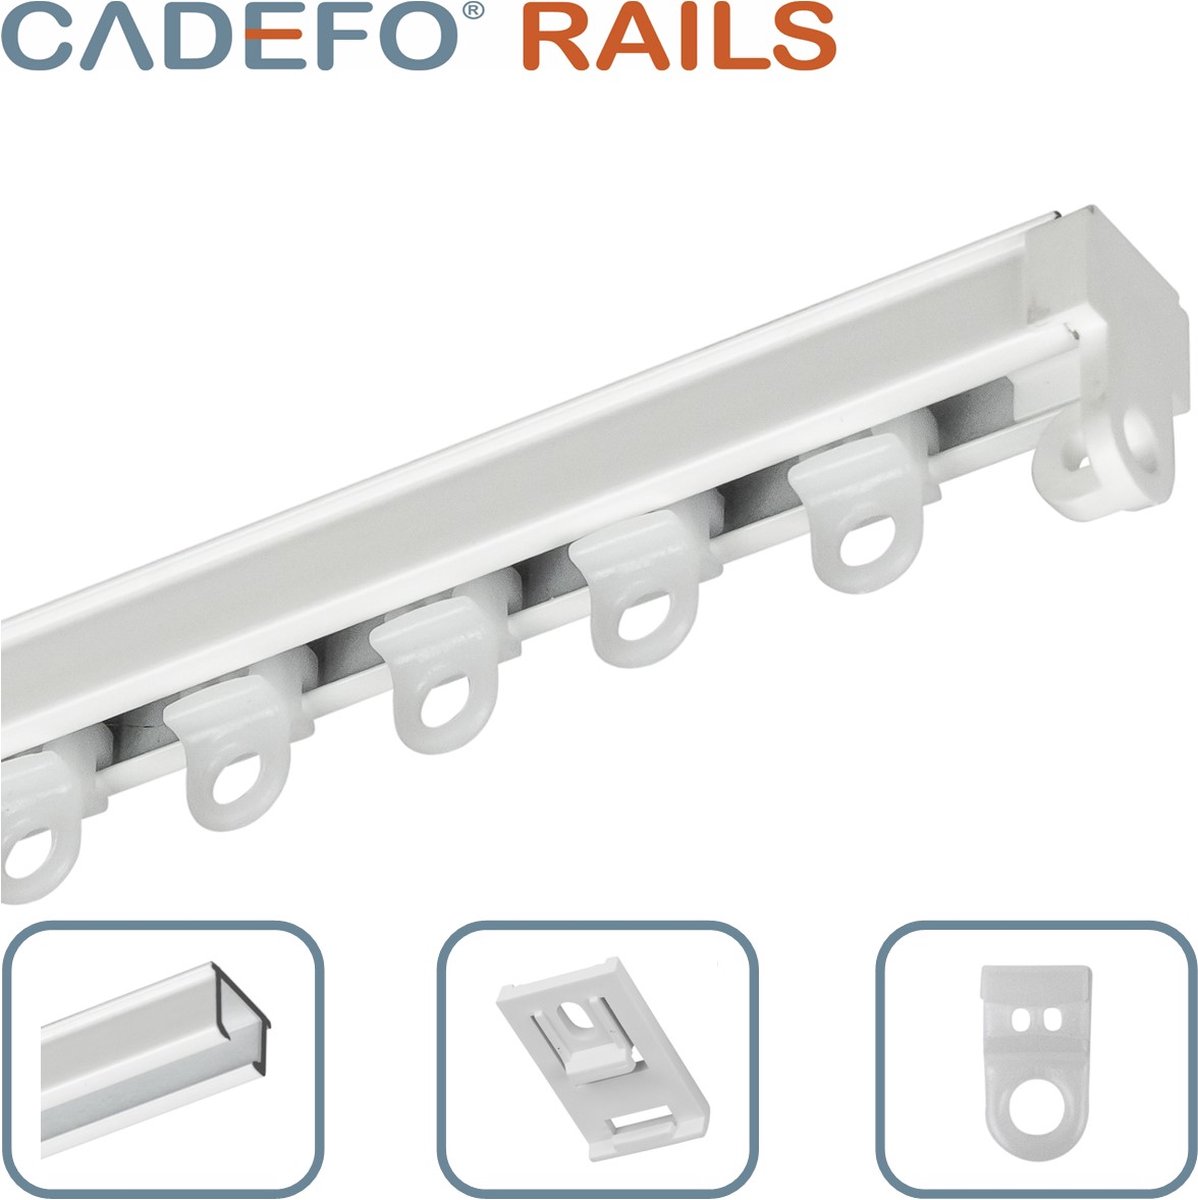 CADEFO RAILS (551 - 600 cm) Gordijnrails - Compleet op maat! - UIT 1 STUK - Leverbaar tot 6 meter - Plafondbevestiging - Lengte 557 cm